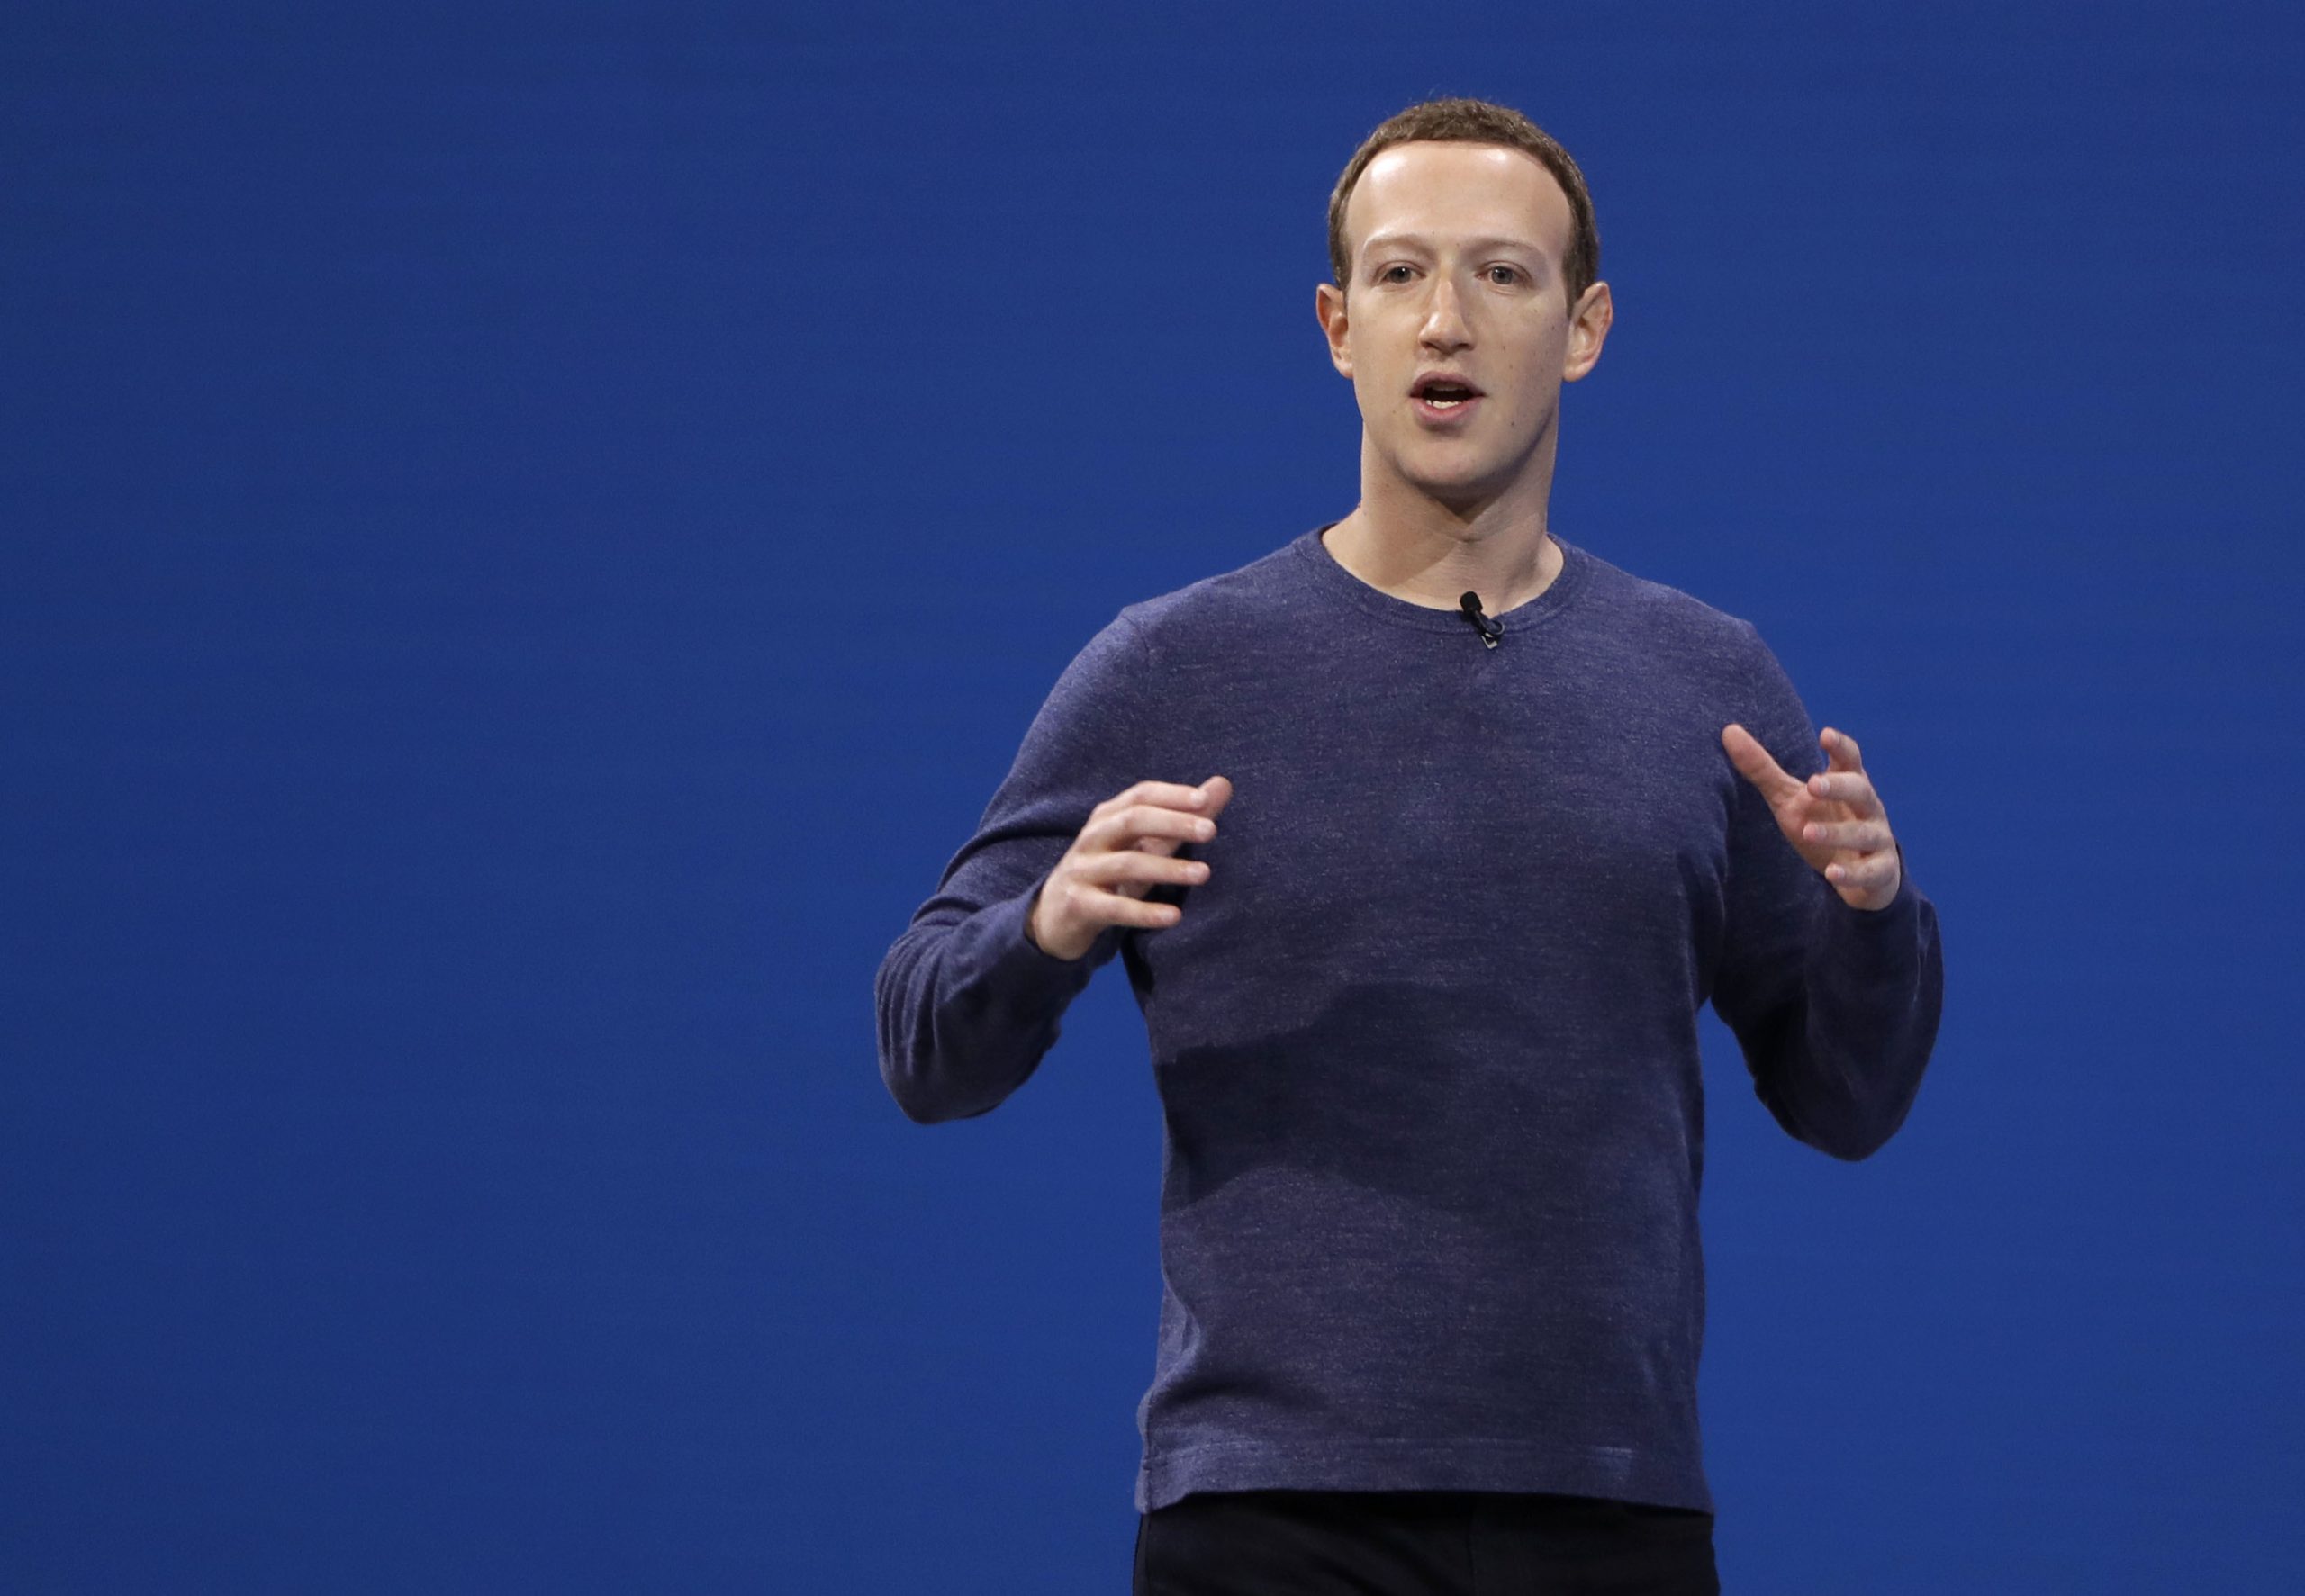 Mark Zuckerberg, Chef von Facebook/Meta hält eine Rede.